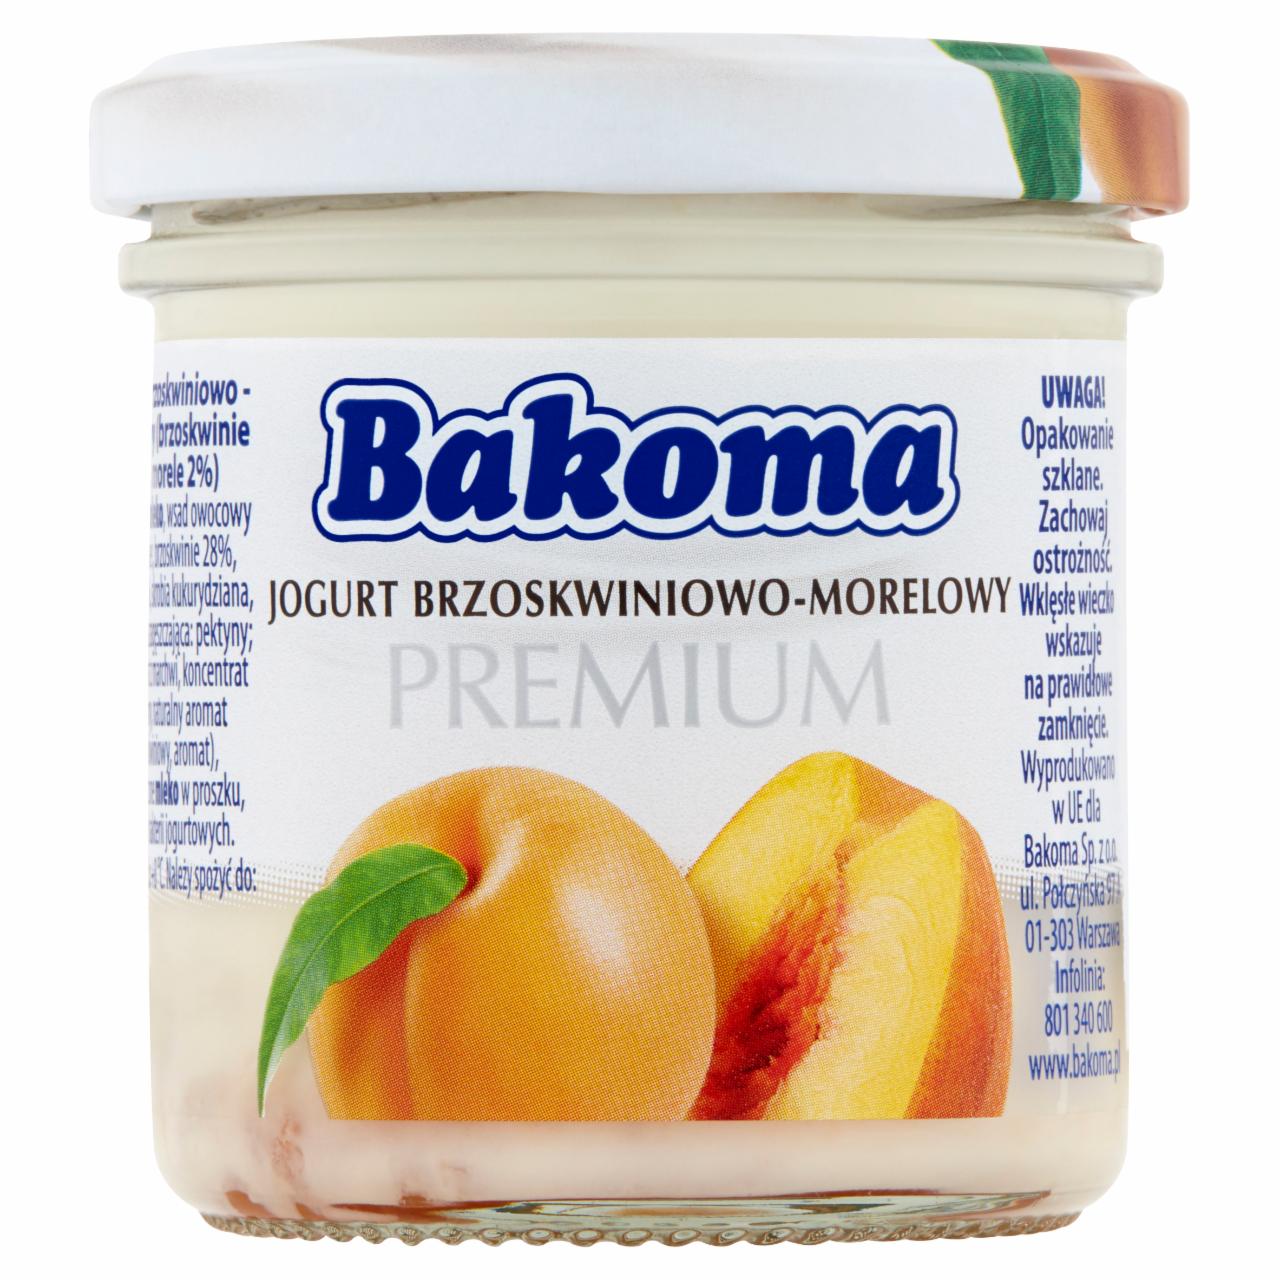 Zdjęcia - Bakoma Premium Jogurt brzoskwiniowo-morelowy 150 g